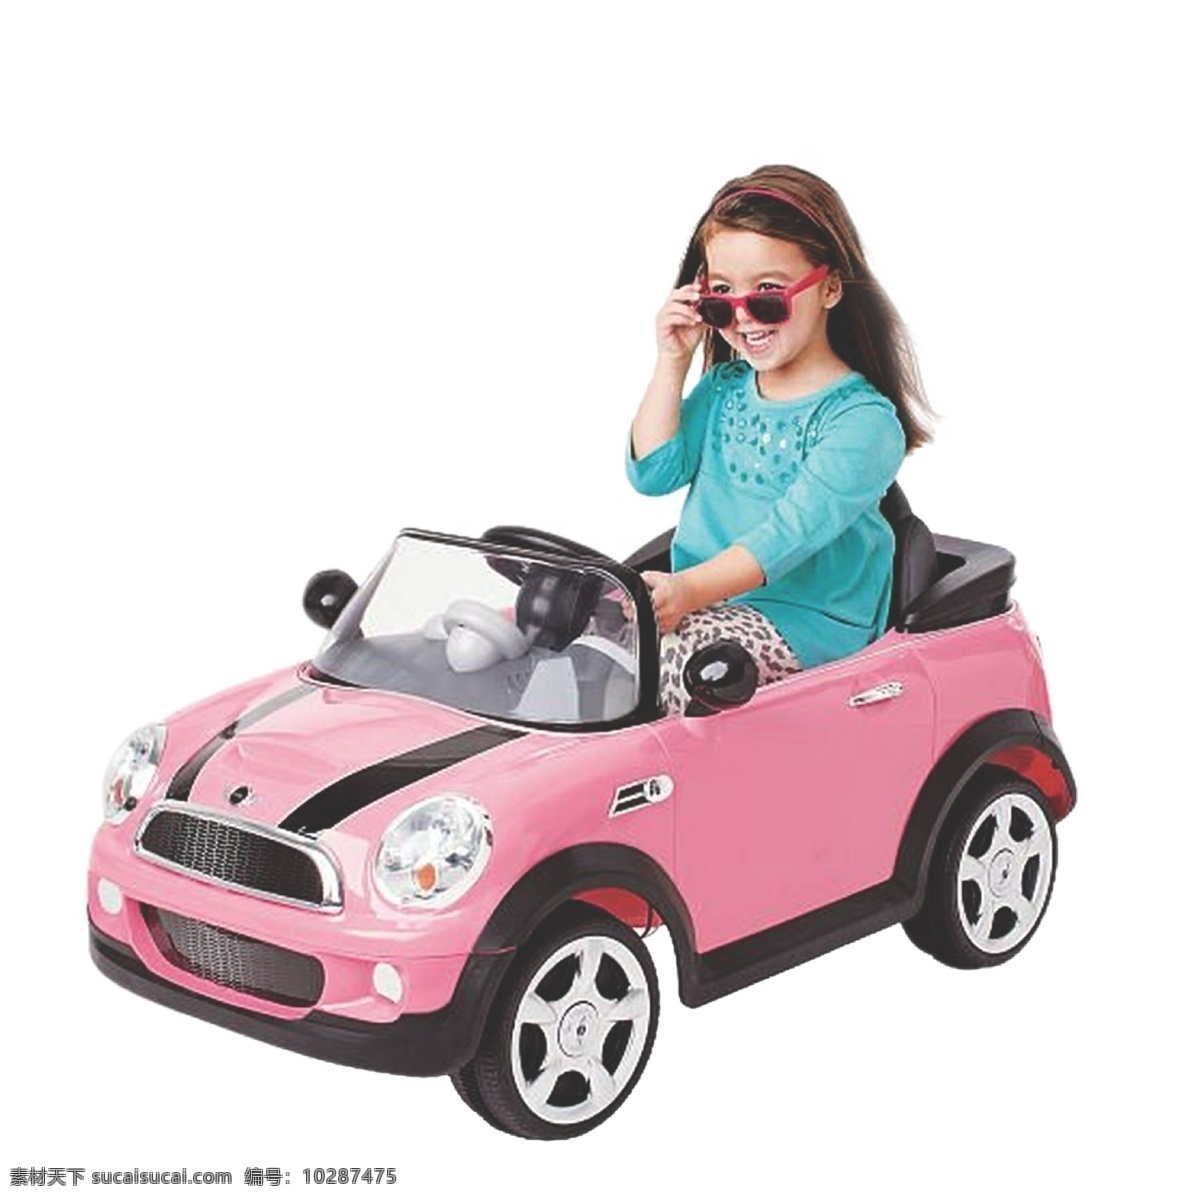 迷你车素材 迷你车 小孩 玩具 车 迷你 粉红车 小车 小孩带墨镜 卡通设计